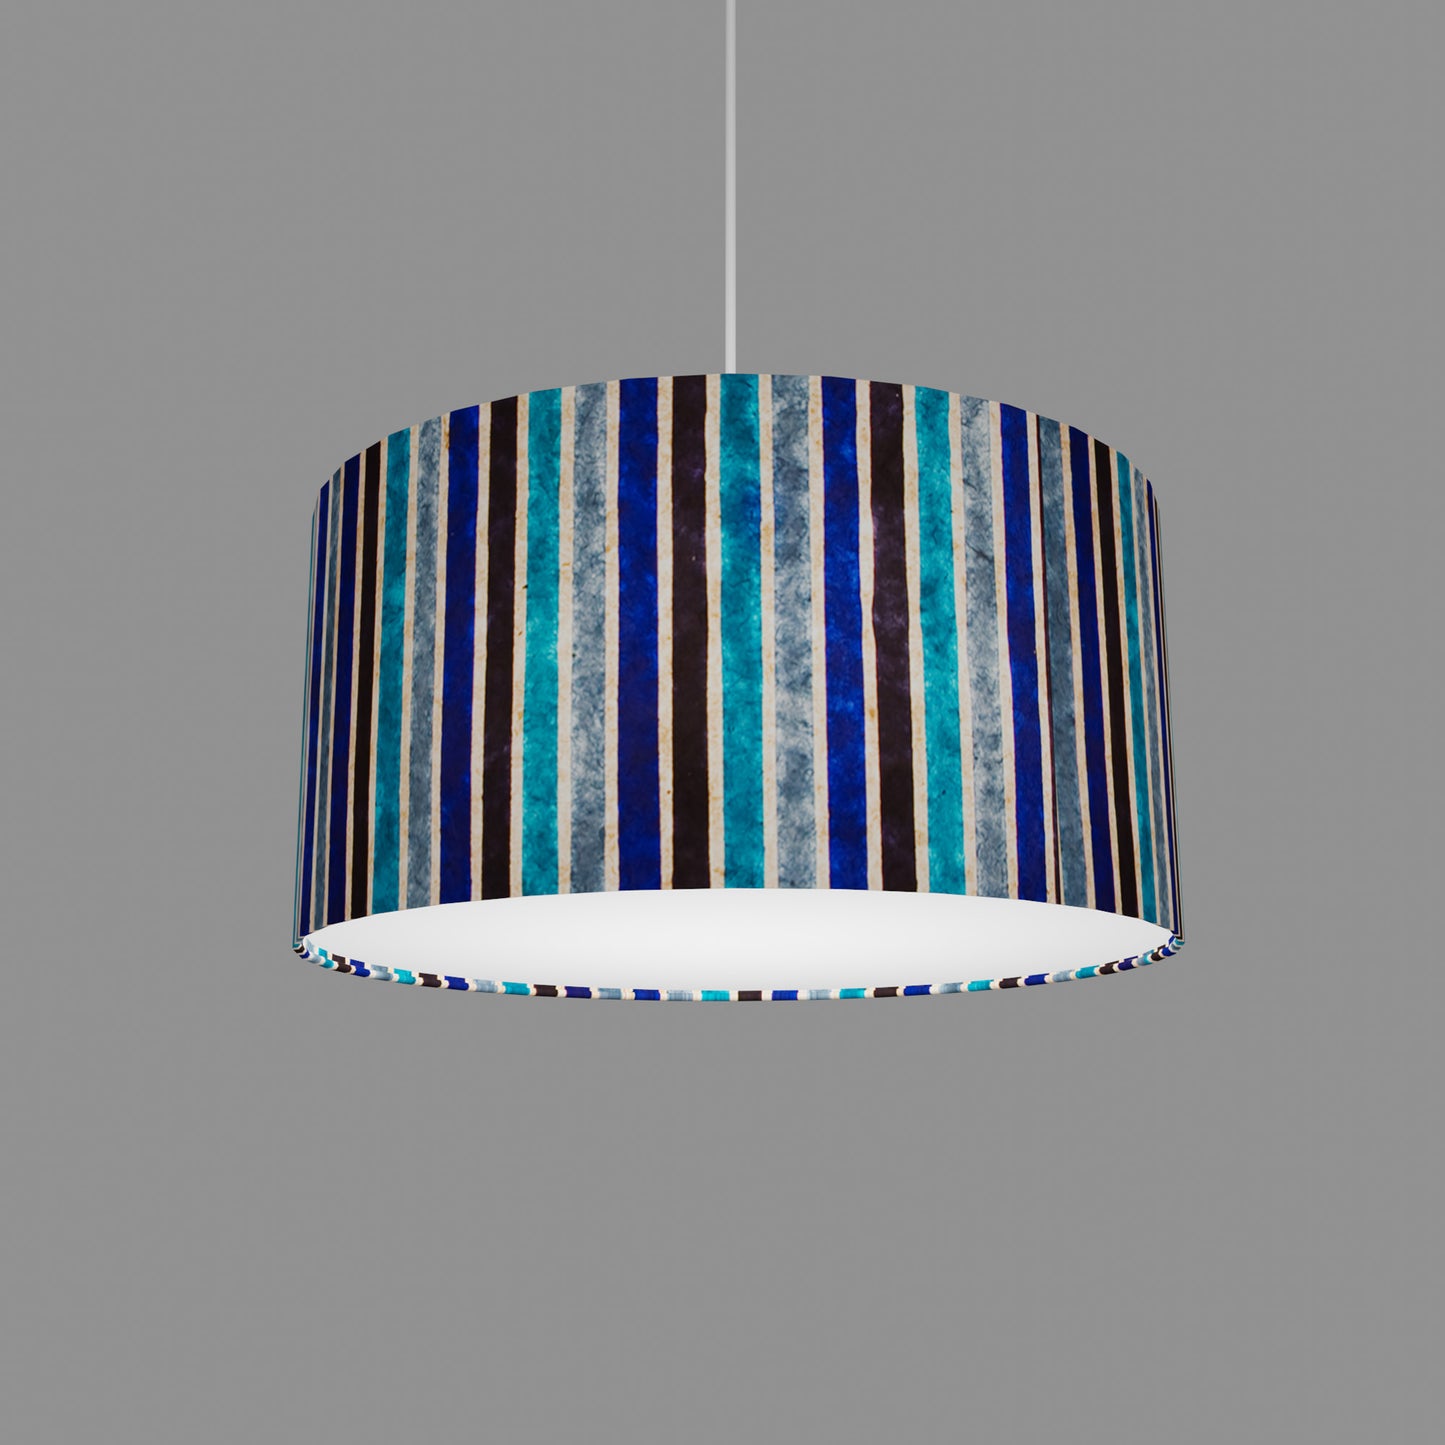 Drum Lamp Shade - P05 - Batik Stripes Blue, 40cm(d) x 20cm(h)